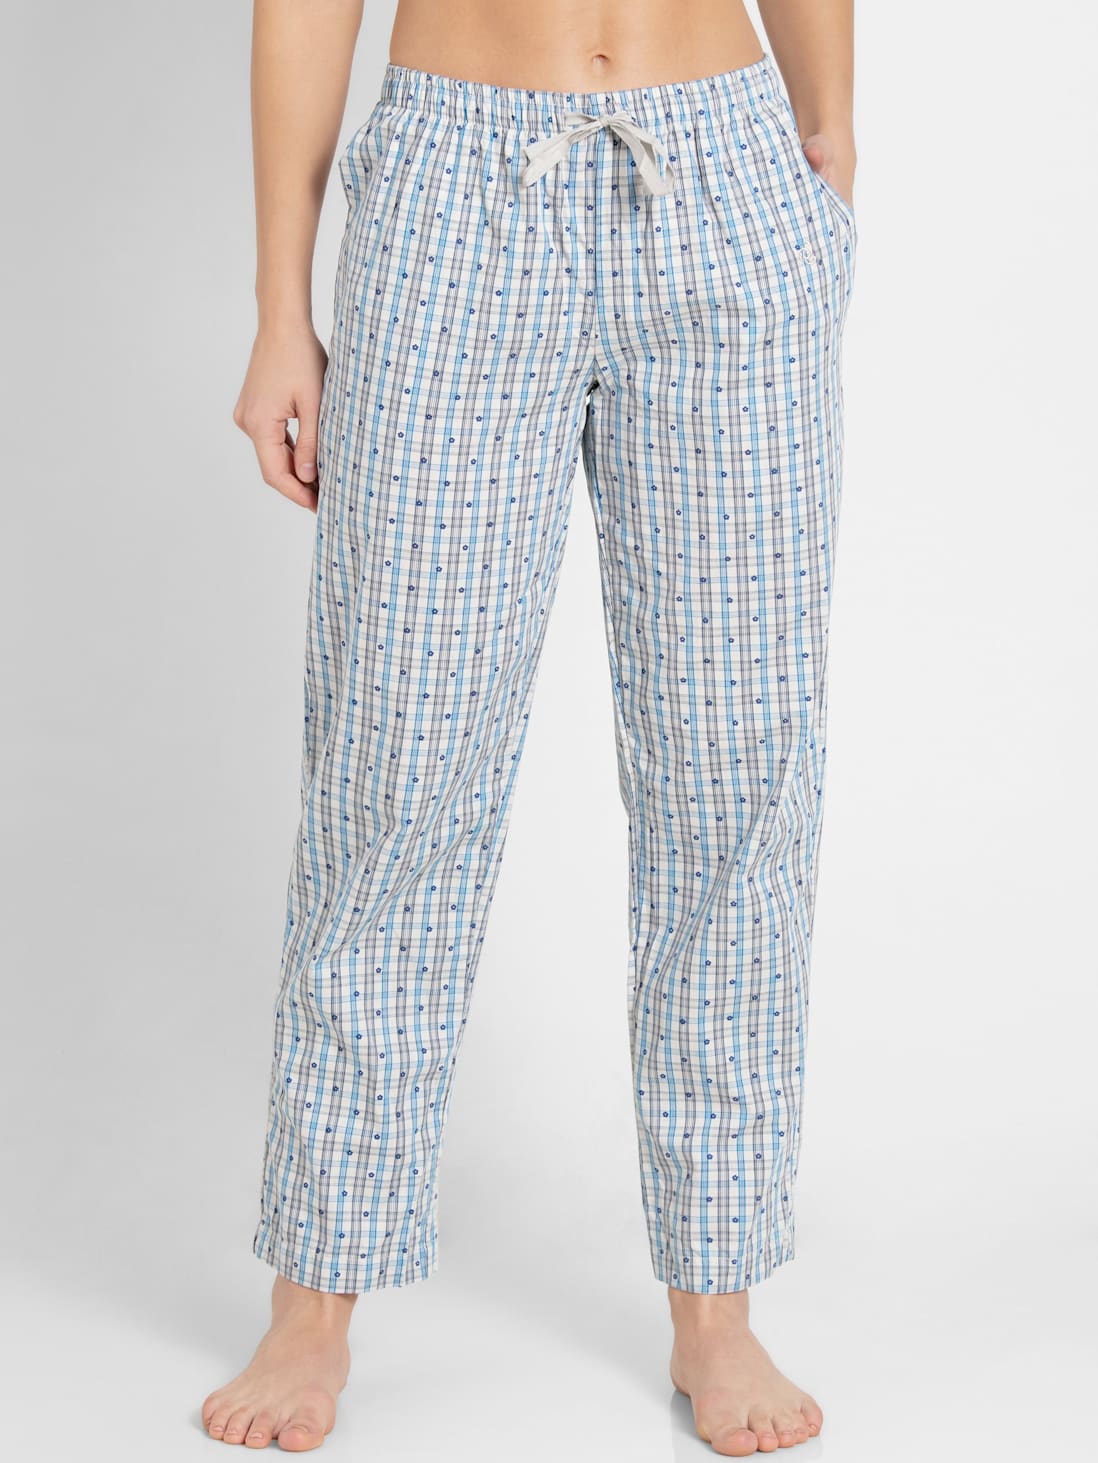 Jockey Pajama pants | Mercari